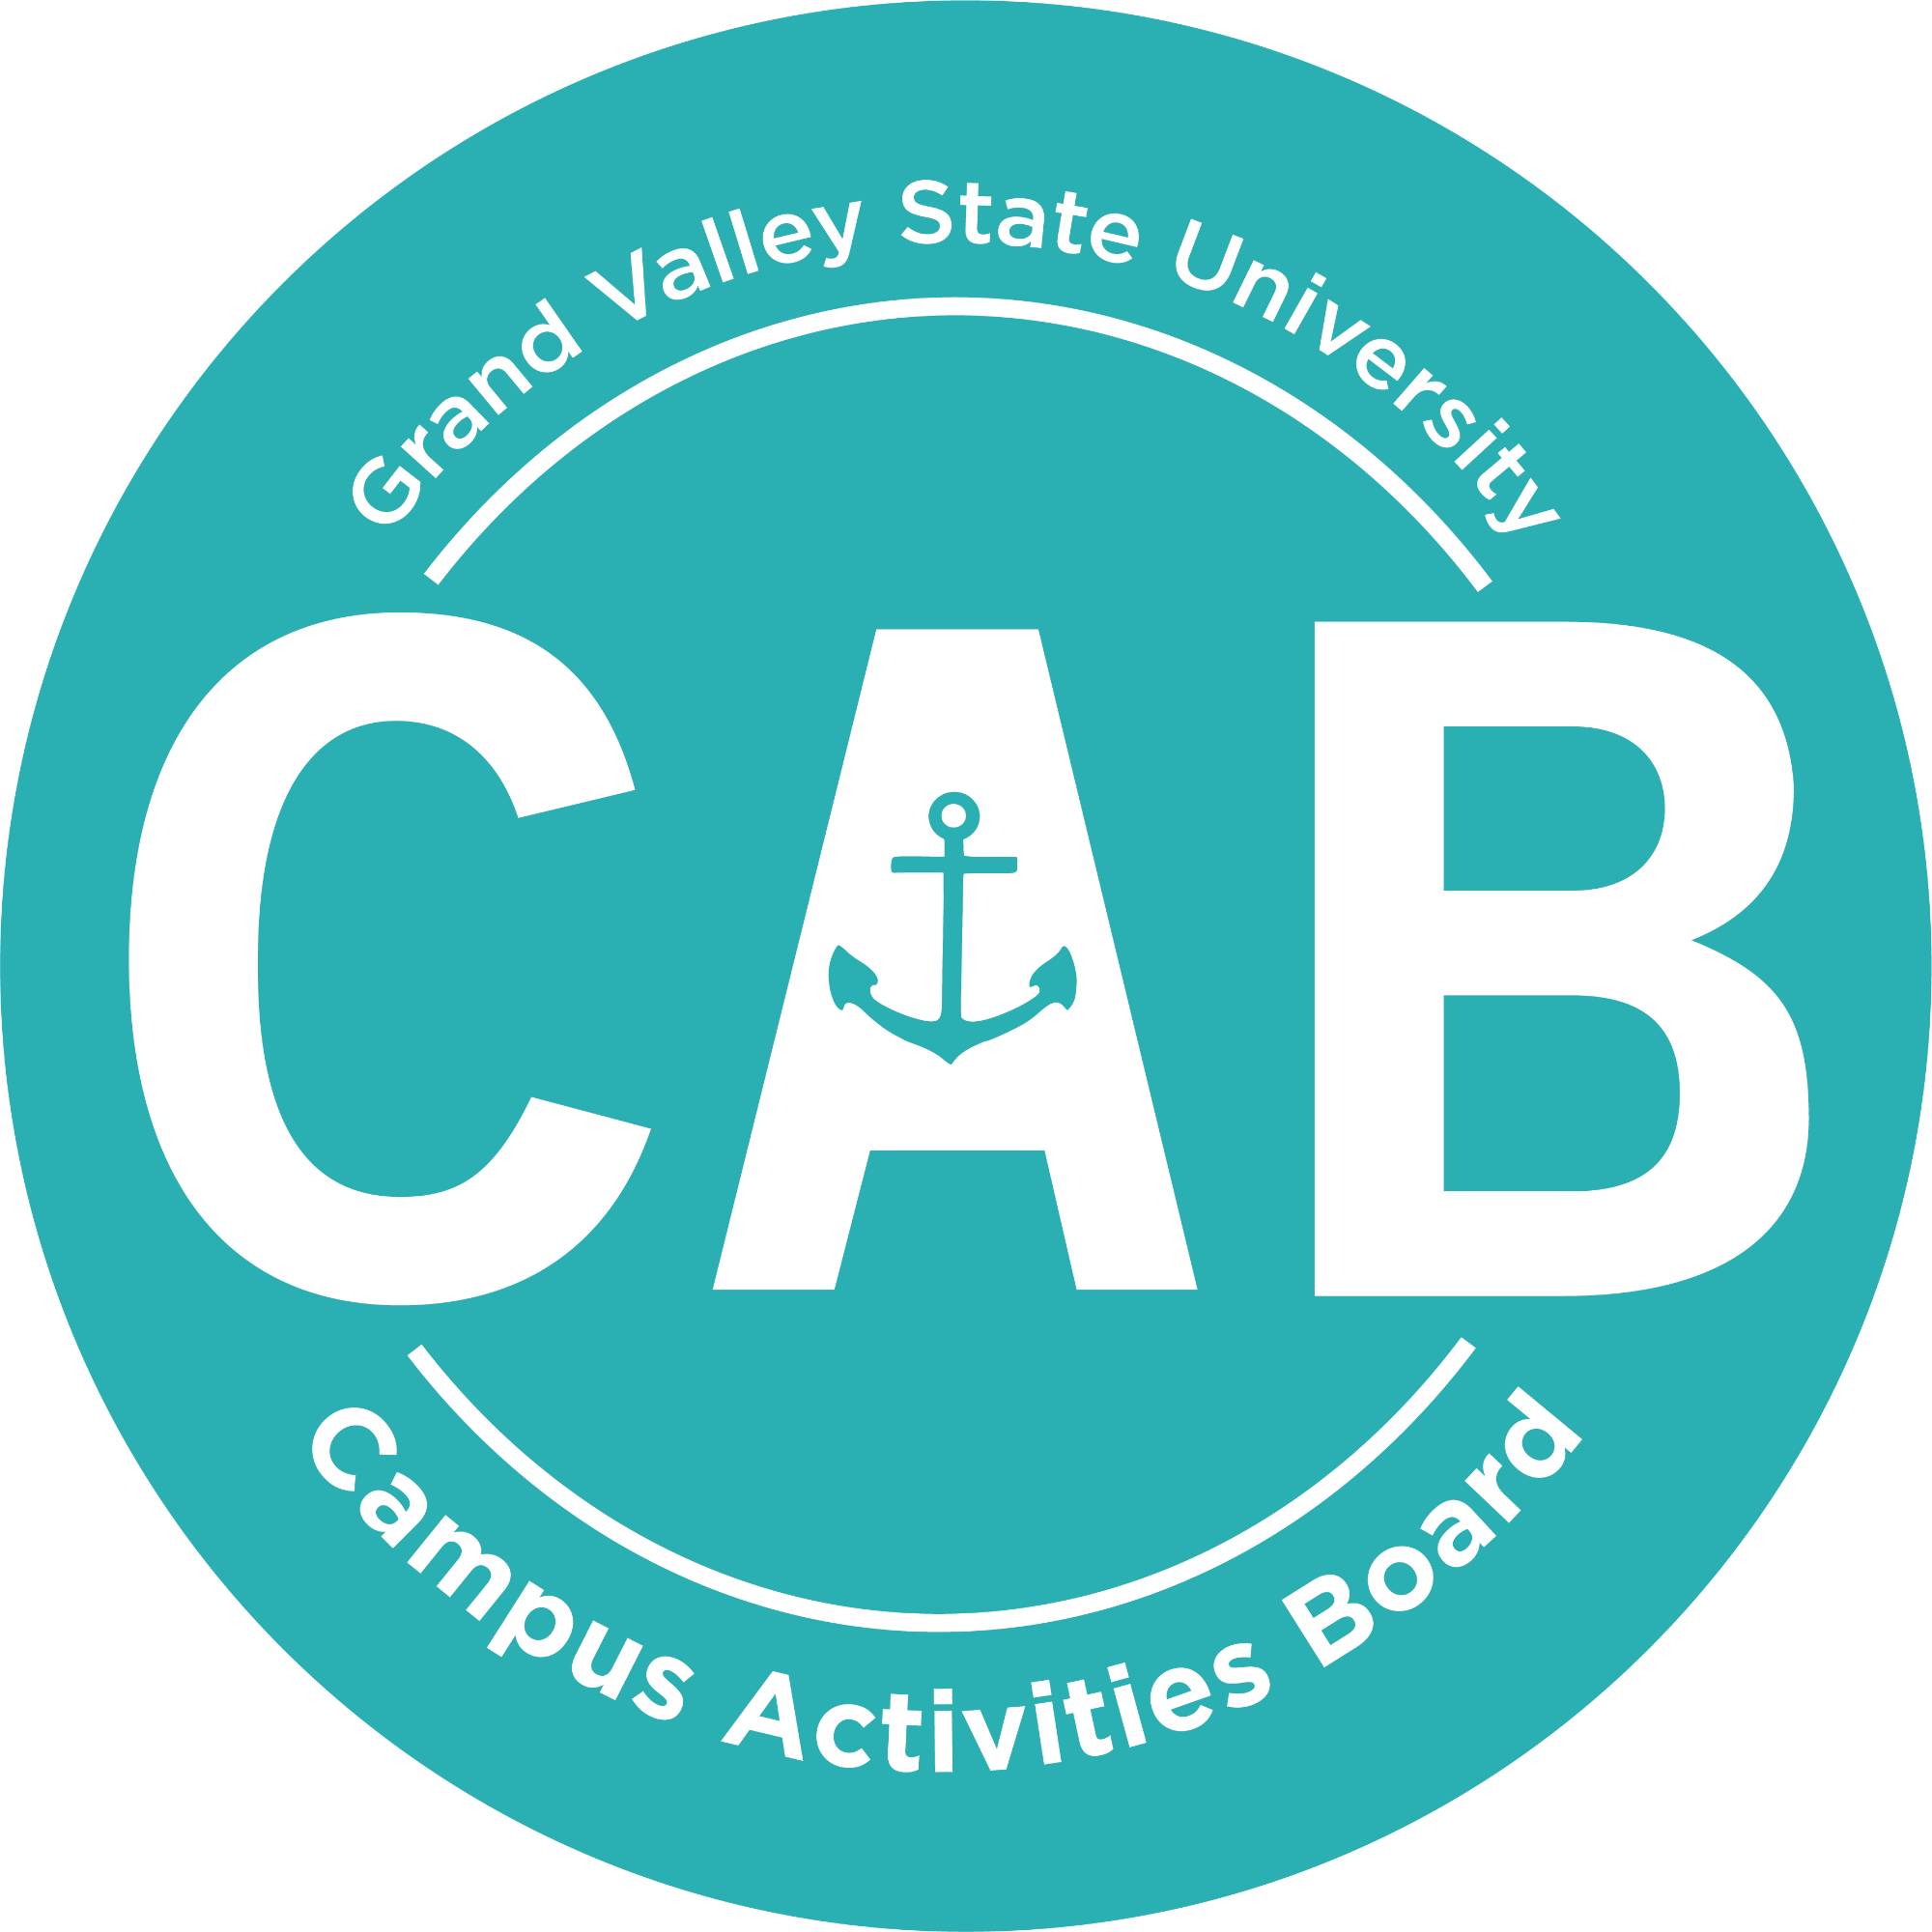 Image of the GVSU Campus Activities Board CAB logo